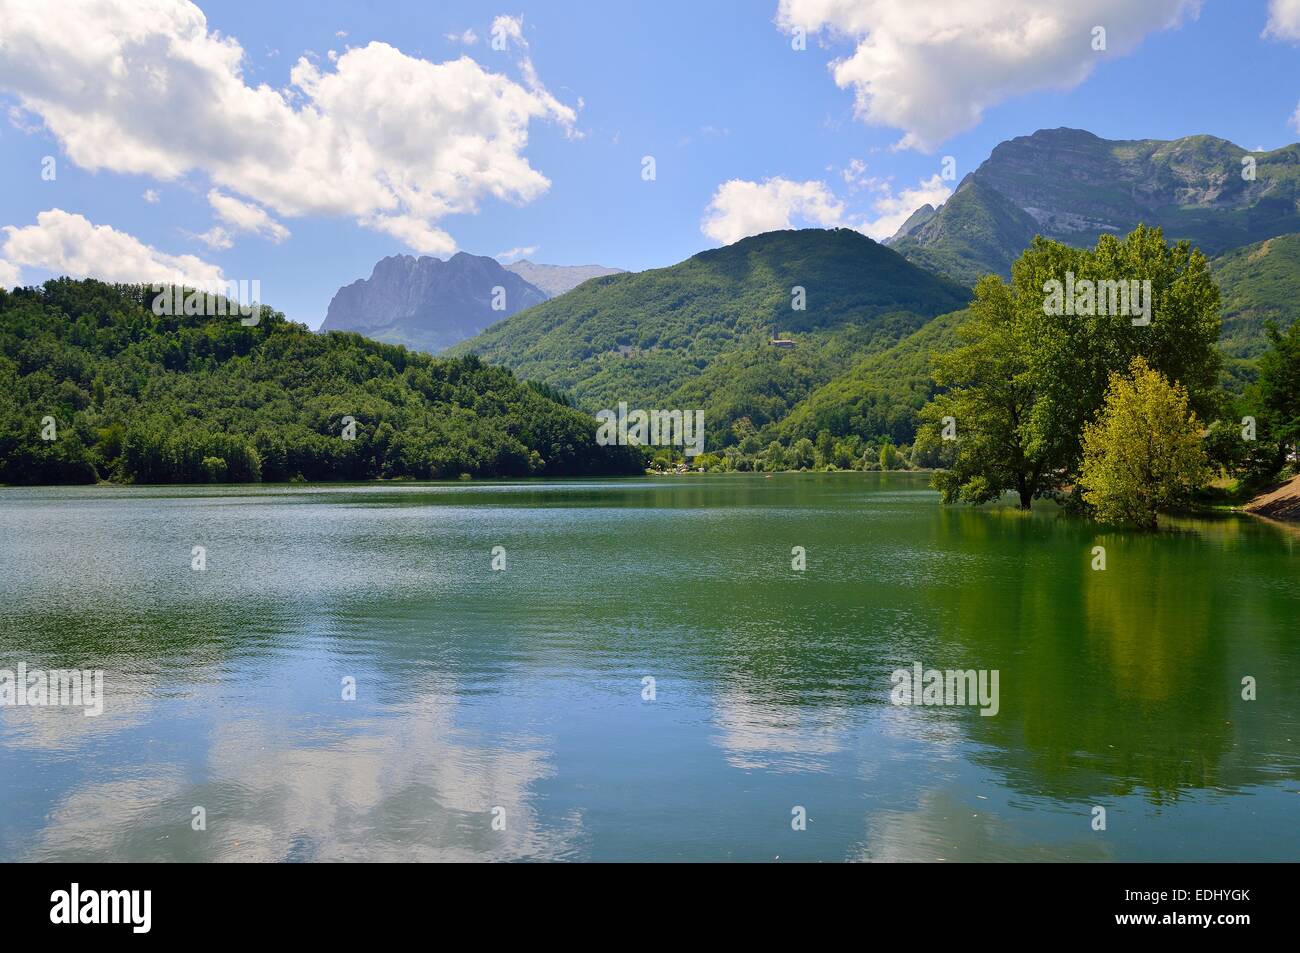 Lago di Gramolazzo nelle Alpi Apuane, Garfagnana in provincia di Lucca - Toscana, Italia Foto Stock